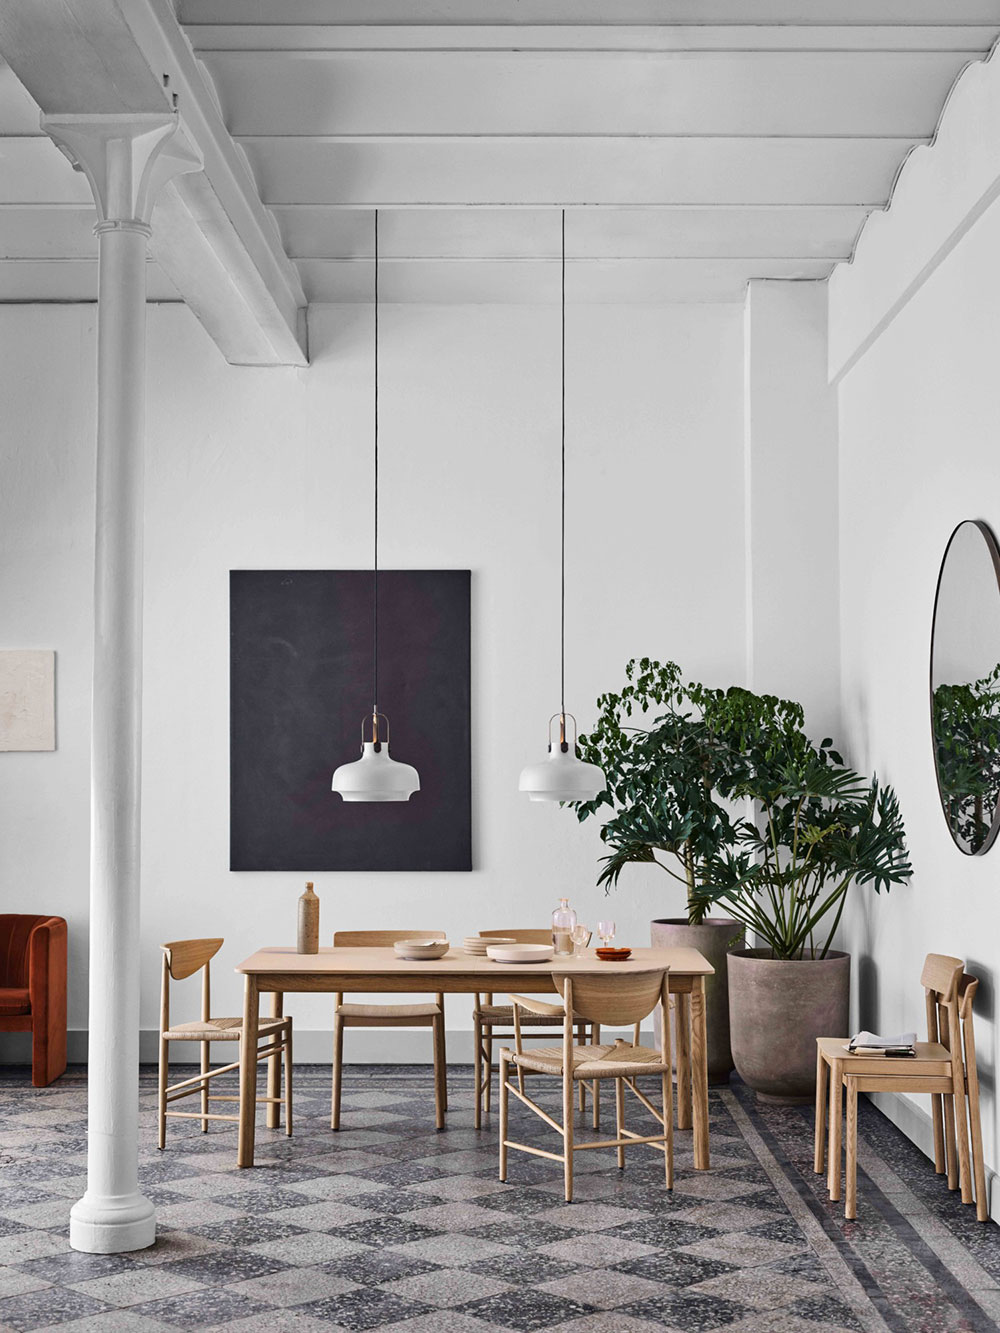 Стильная новая коллекция мебели от датского бренда &Tradition